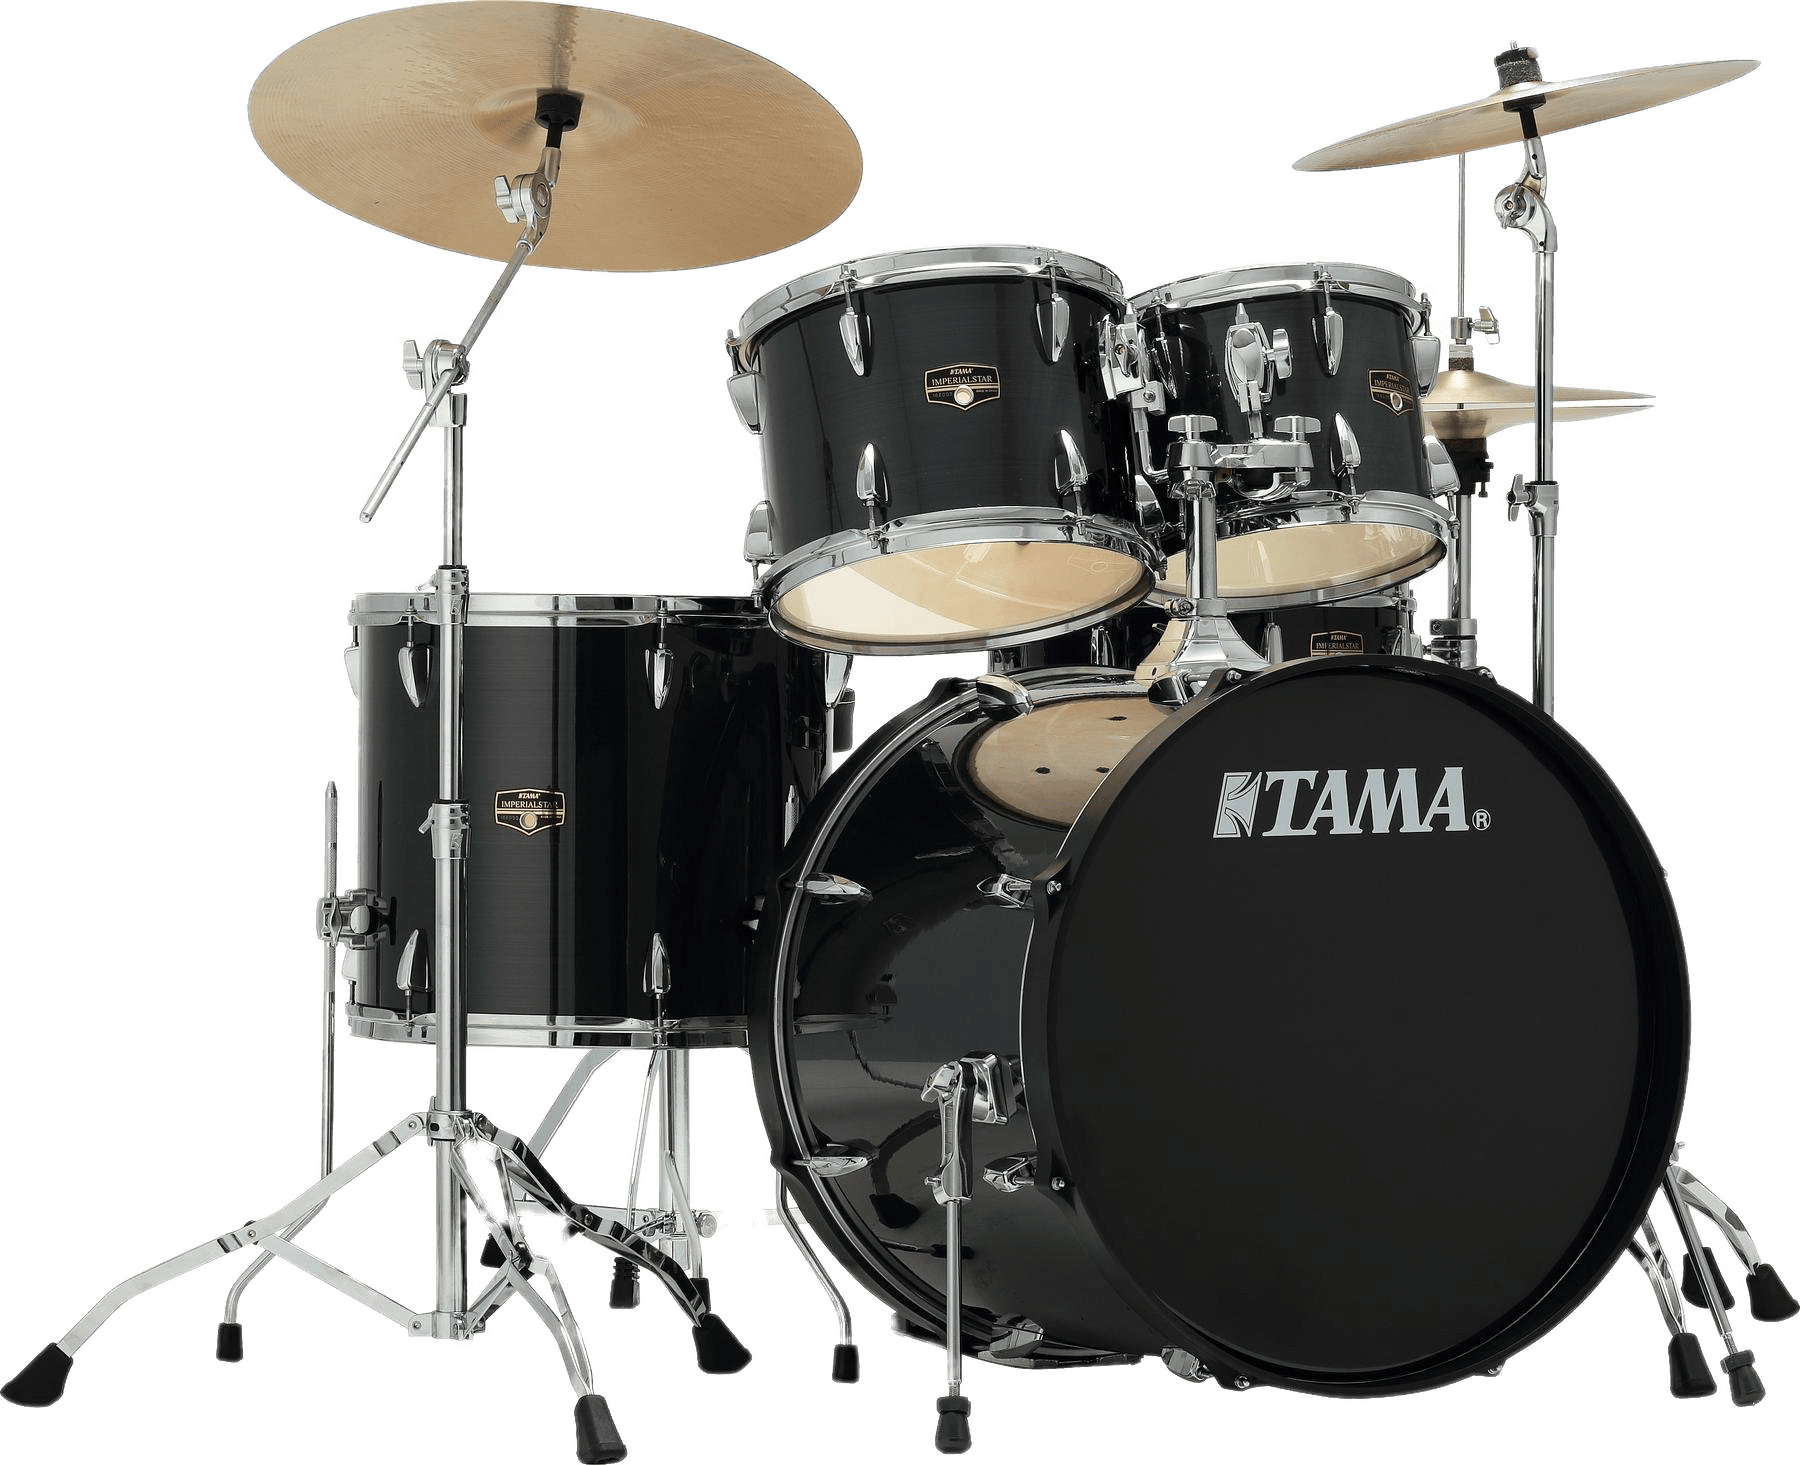 Large Drum Kit icons